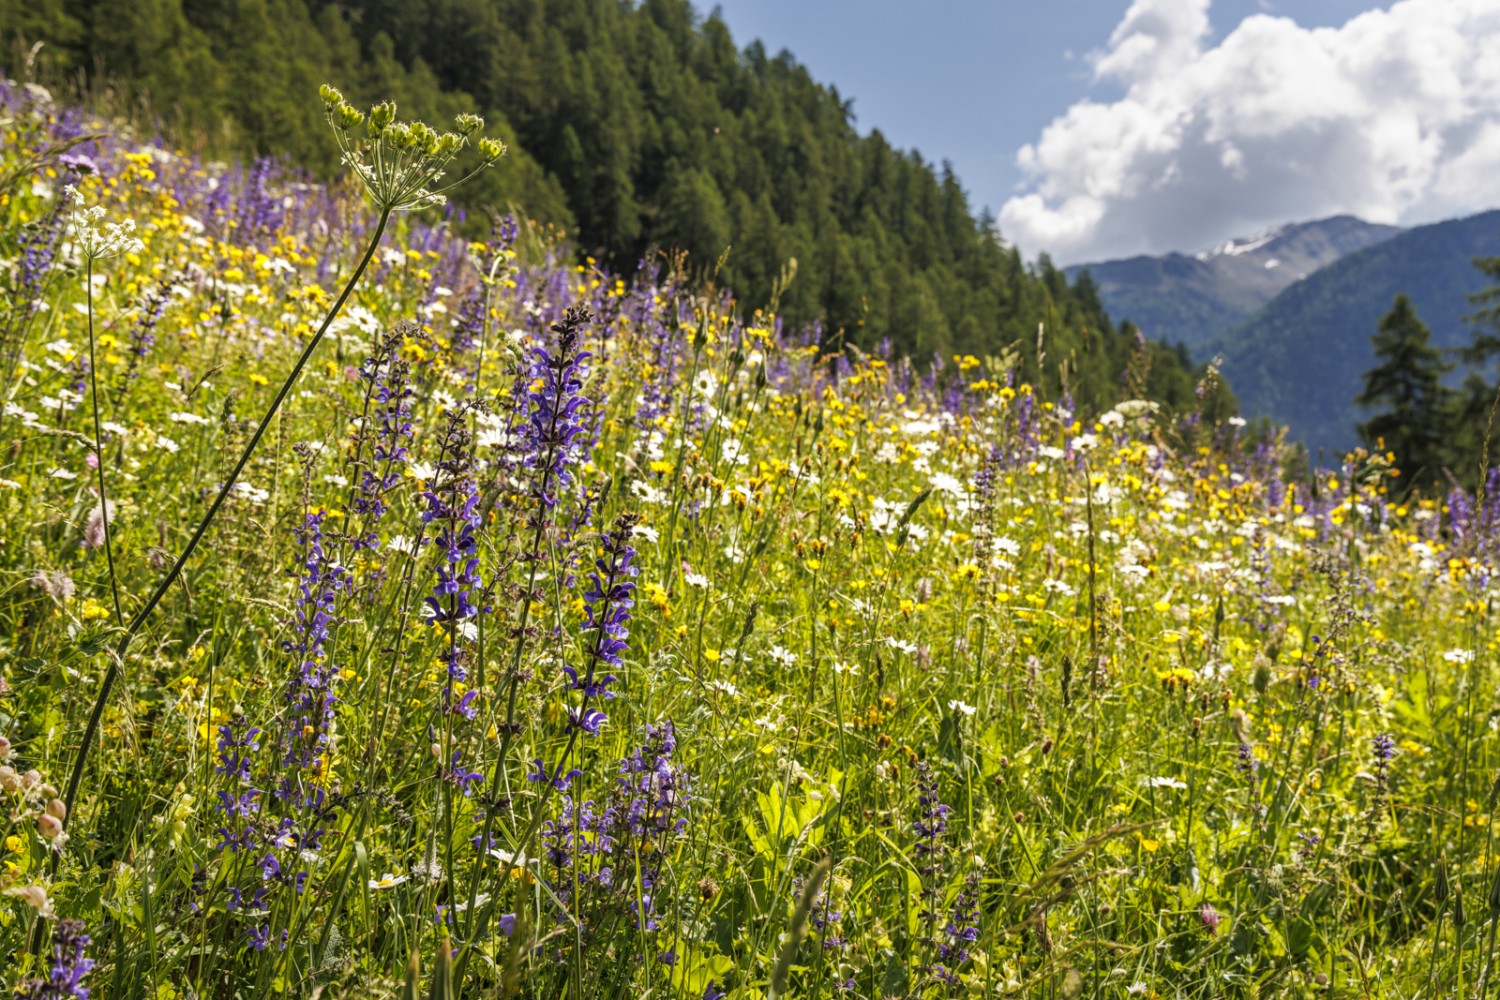 La floraison printanière dans le Val Müstair est brève mais intense.
Photo: Severin Nowacki